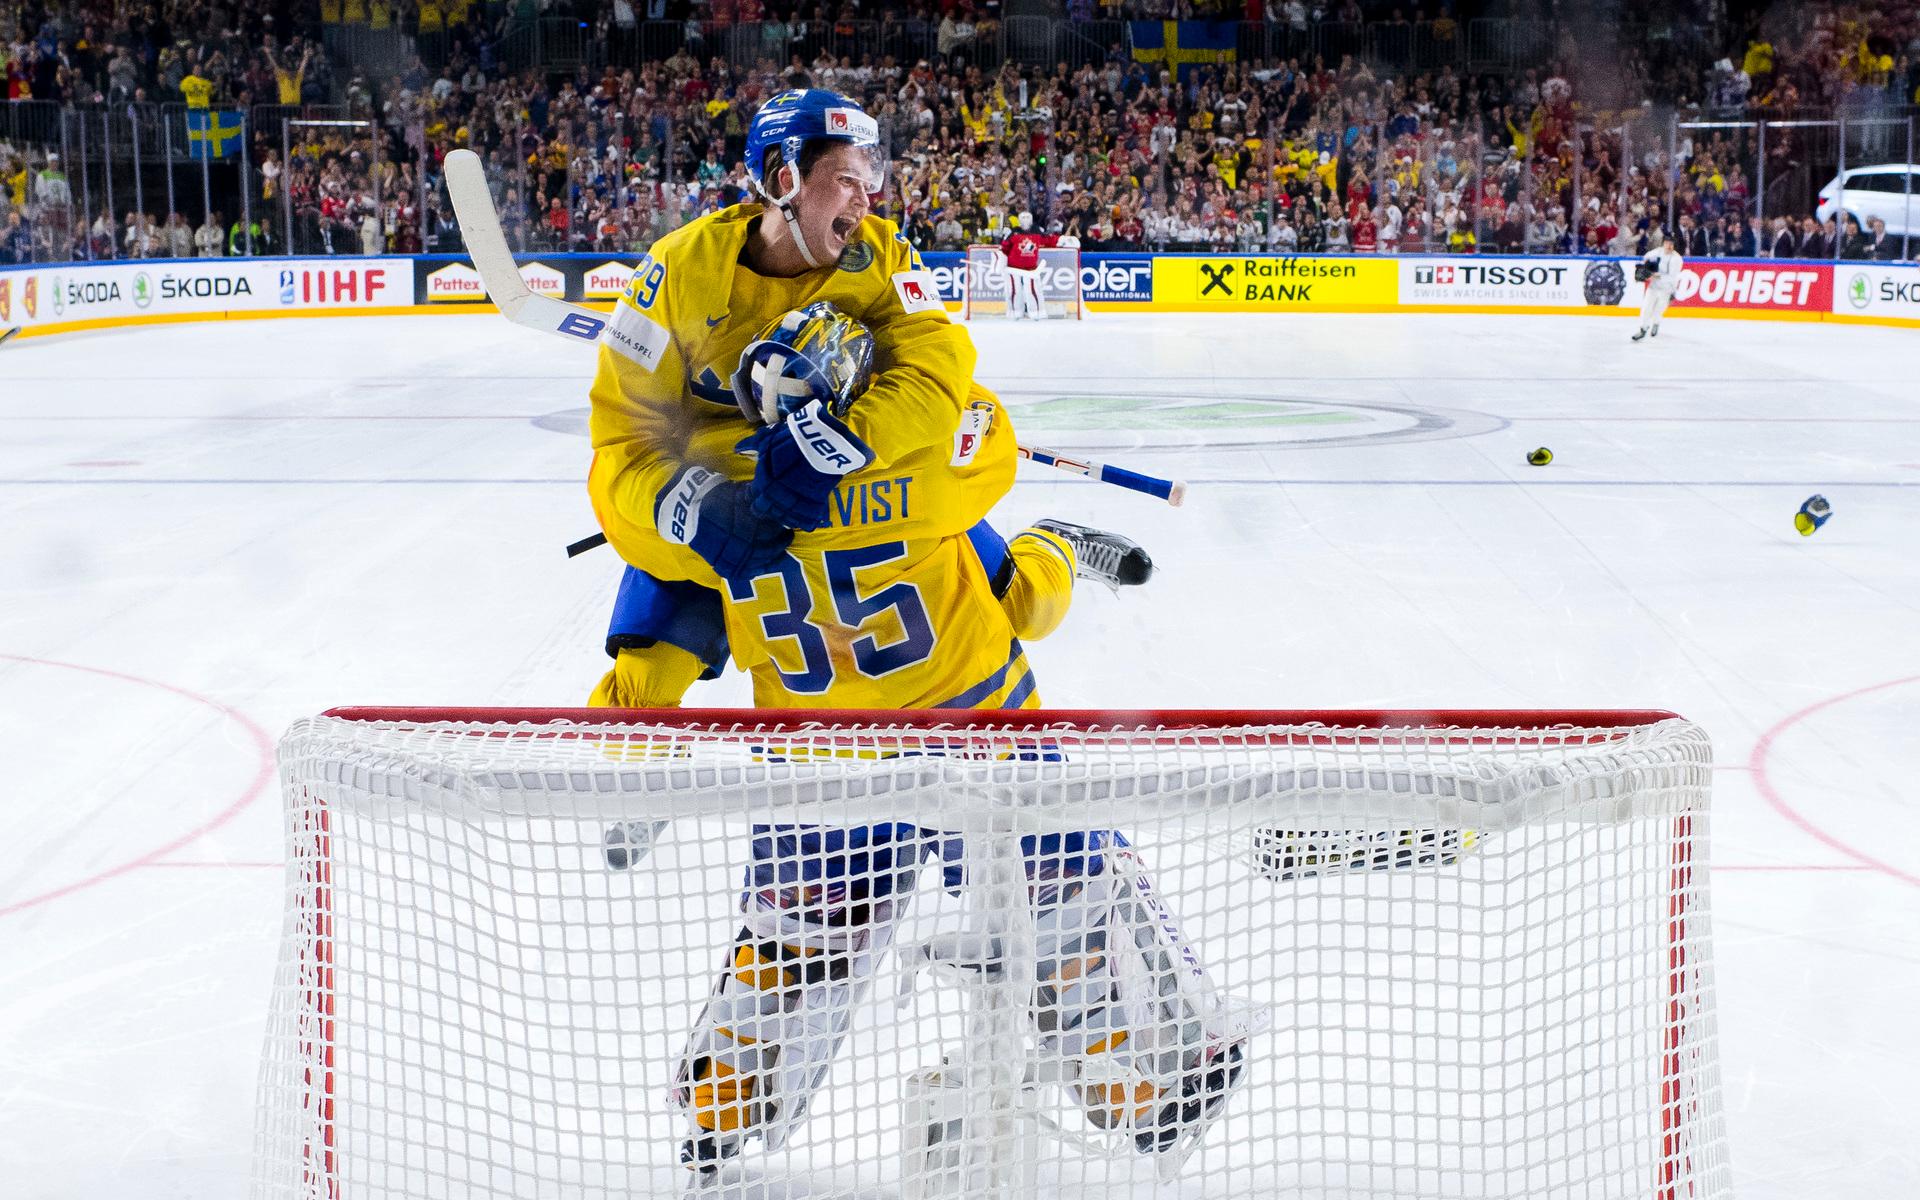 Sveriges målvakt Henrik Lundqvist och William Nylander jublar efter avgörande straffräddningen i finalen mellan Kanada och Sverige på ishockey-VM i Köln år 2017.